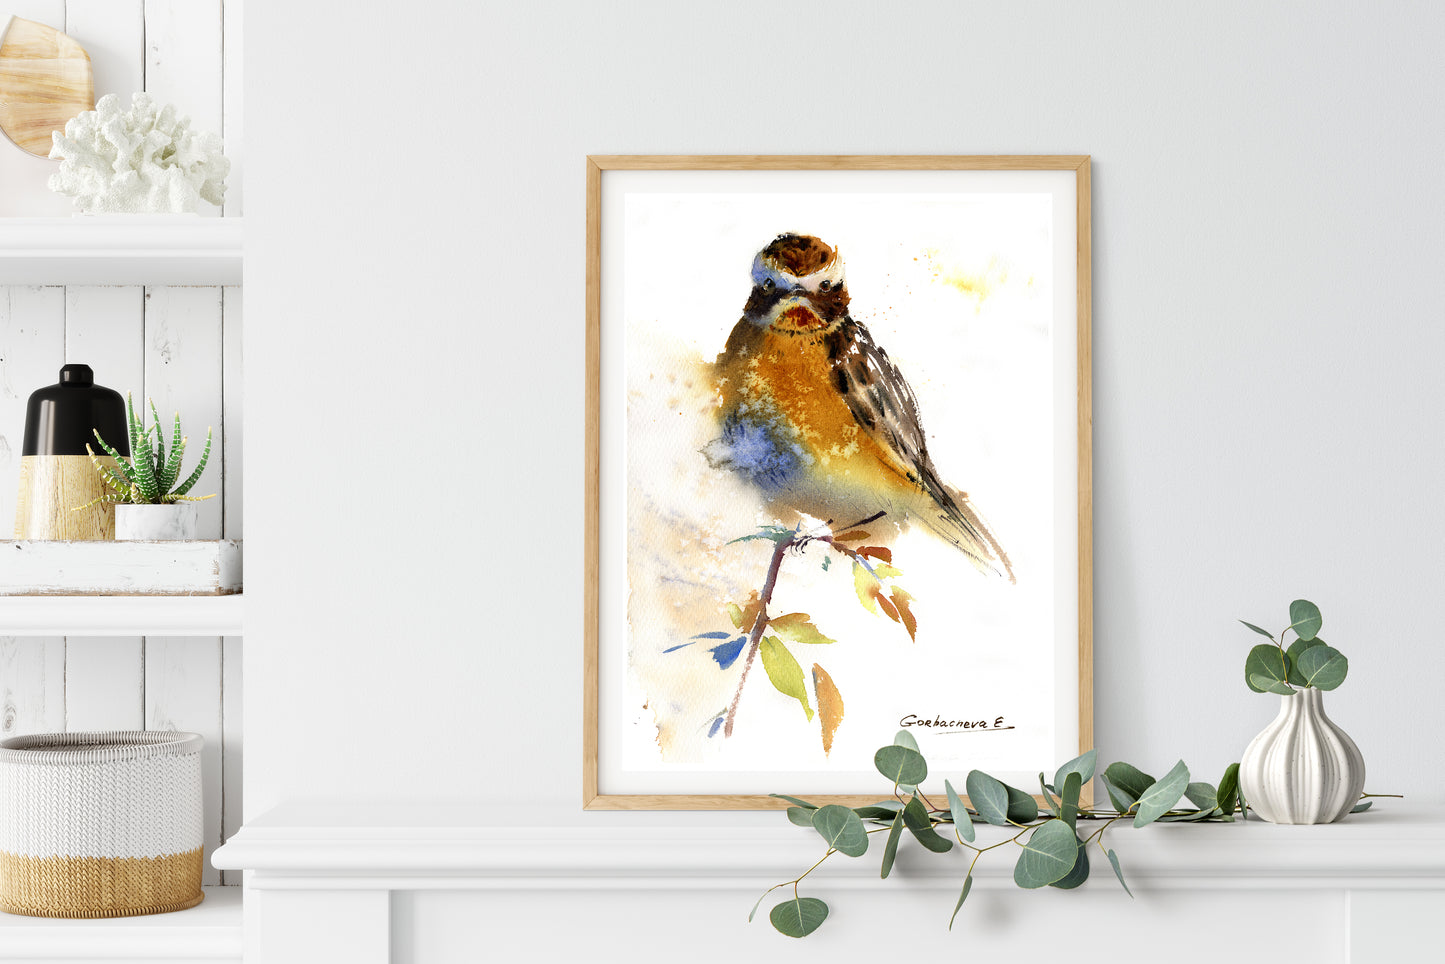 Wild Bird Watercolor Art Print in Ocher Tones - Rustic Home Decor - Canvas Bird Painting Gift